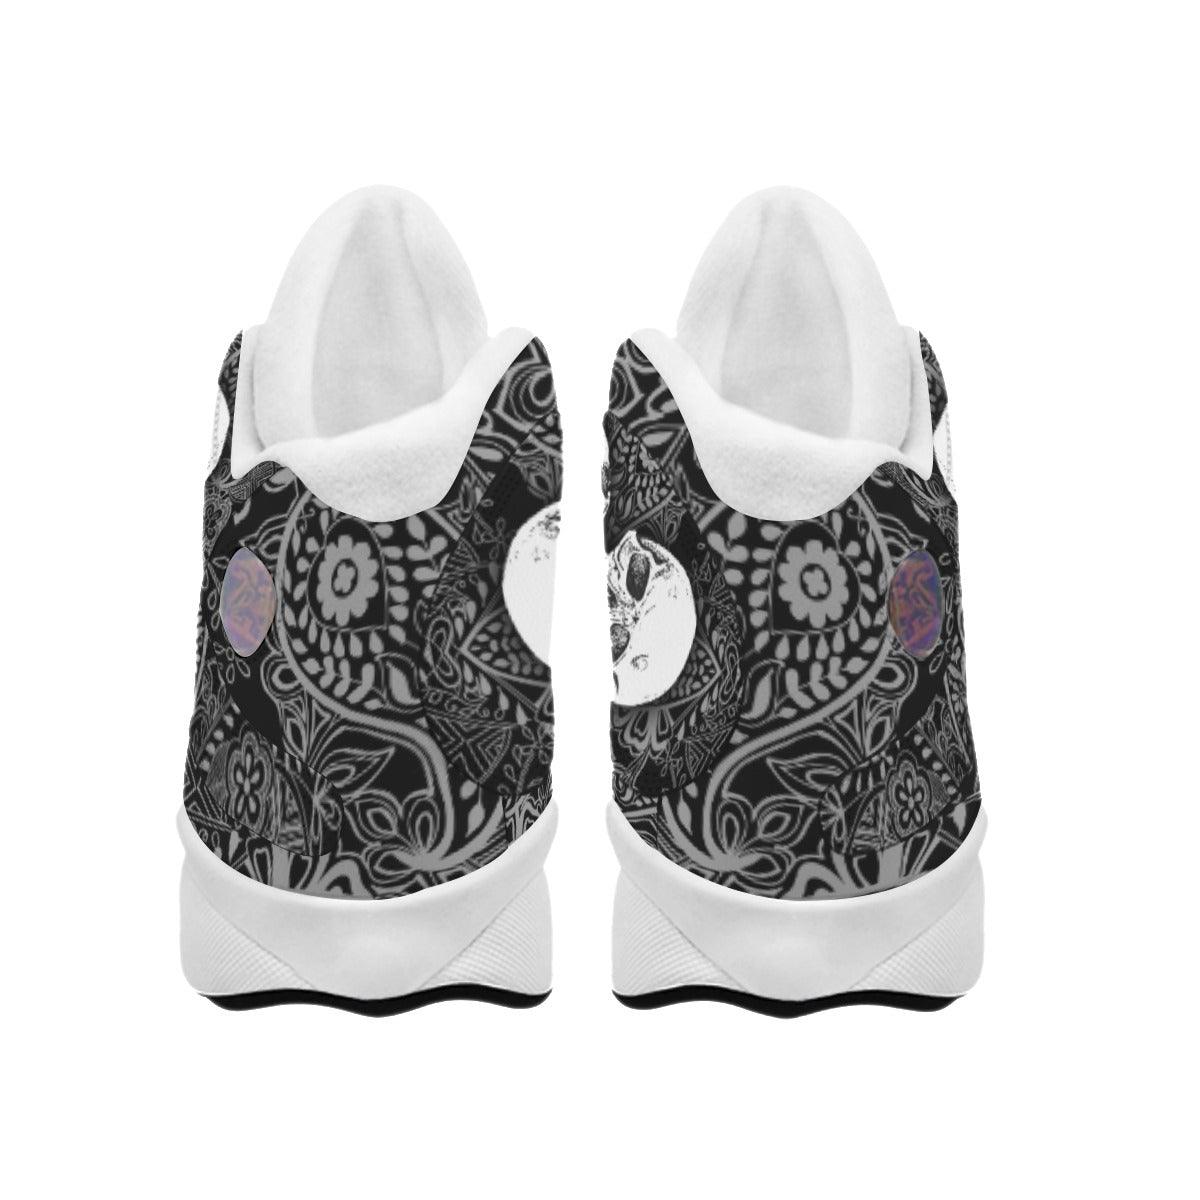 Skull Gothic Black And White Women's Sneaker Shoes - Wonder Skull